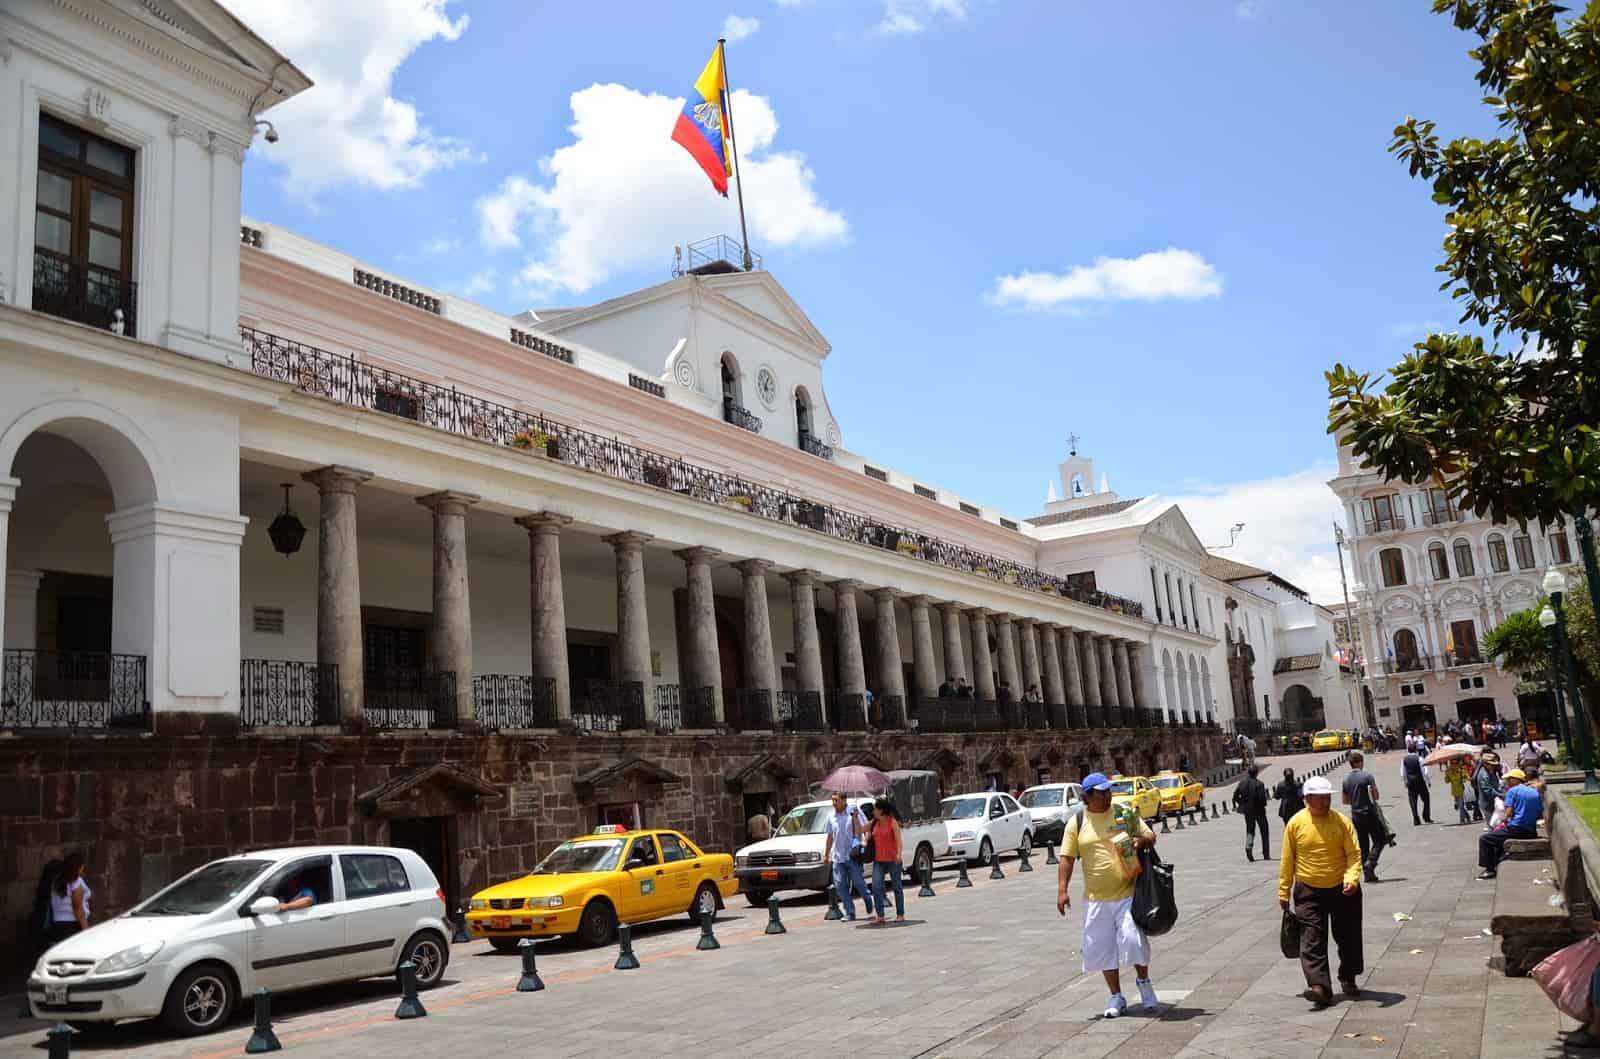 Carondelet Palace on Plaza Grande in Quito, Ecuador